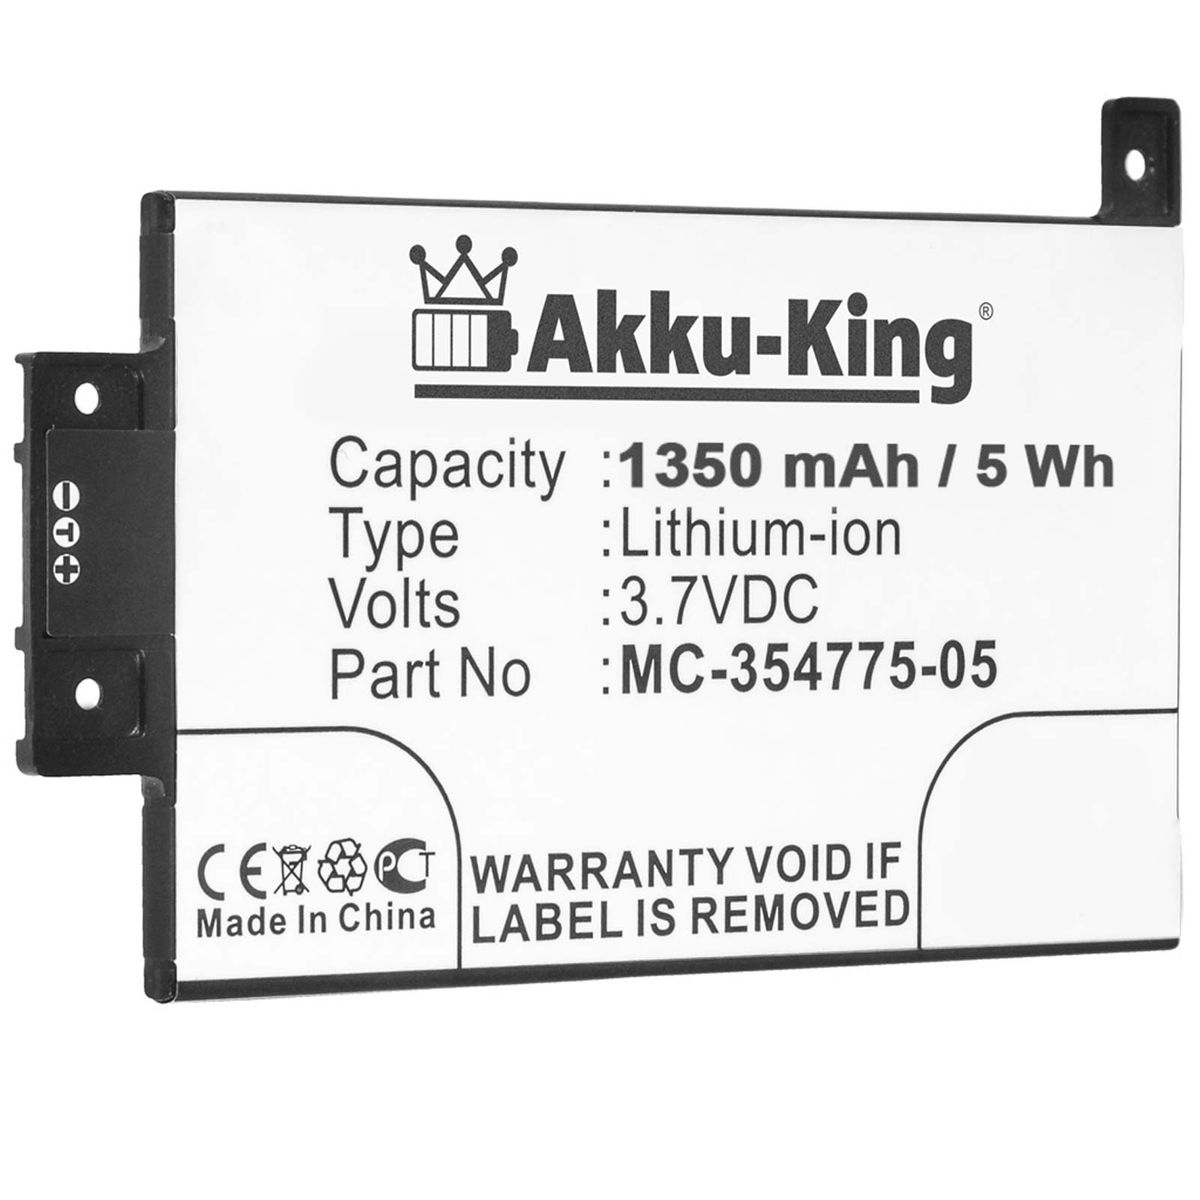 Amazon AKKU-KING Akku MC-354775-05 mit Li-Ion 3.7 1350mAh Volt, Geräte-Akku, kompatibel